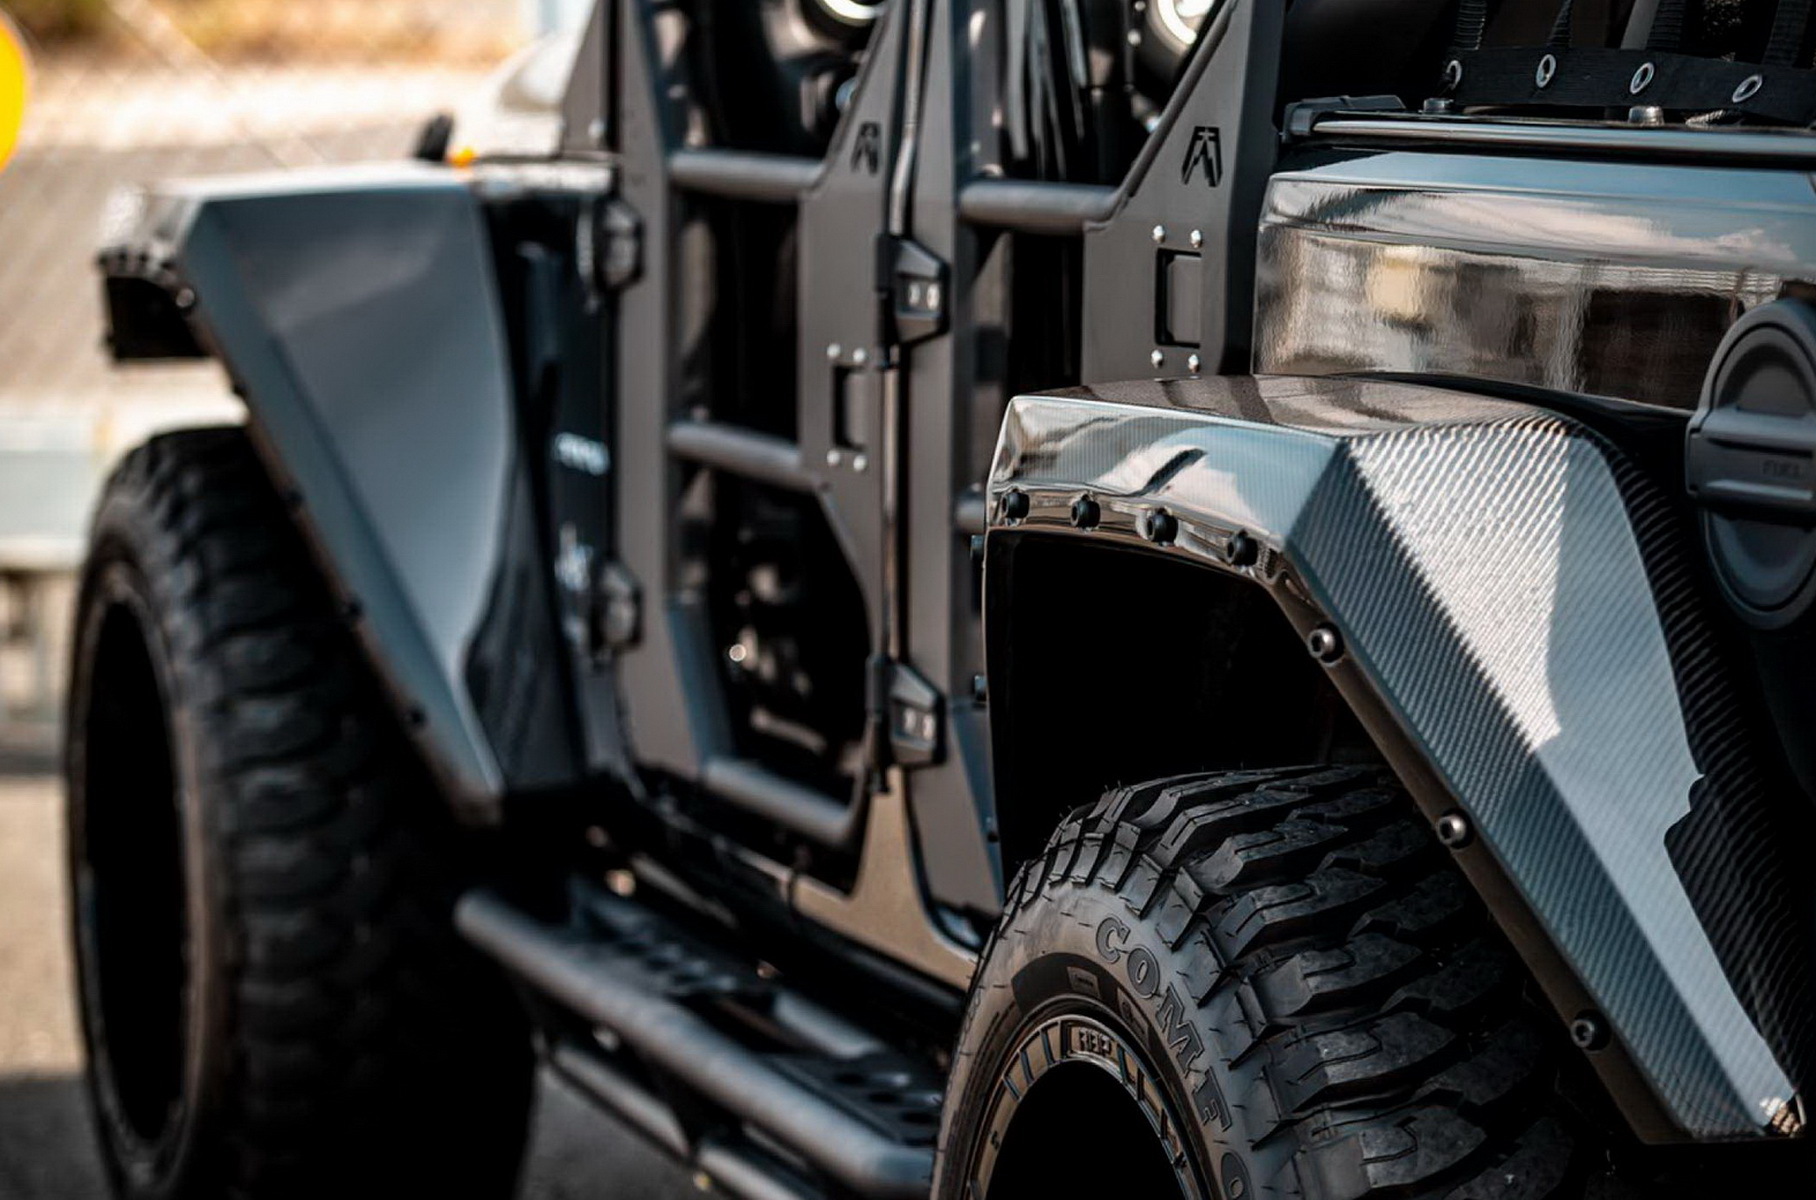 Для Jeep Wrangler разработали обвес в милитаристском стиле